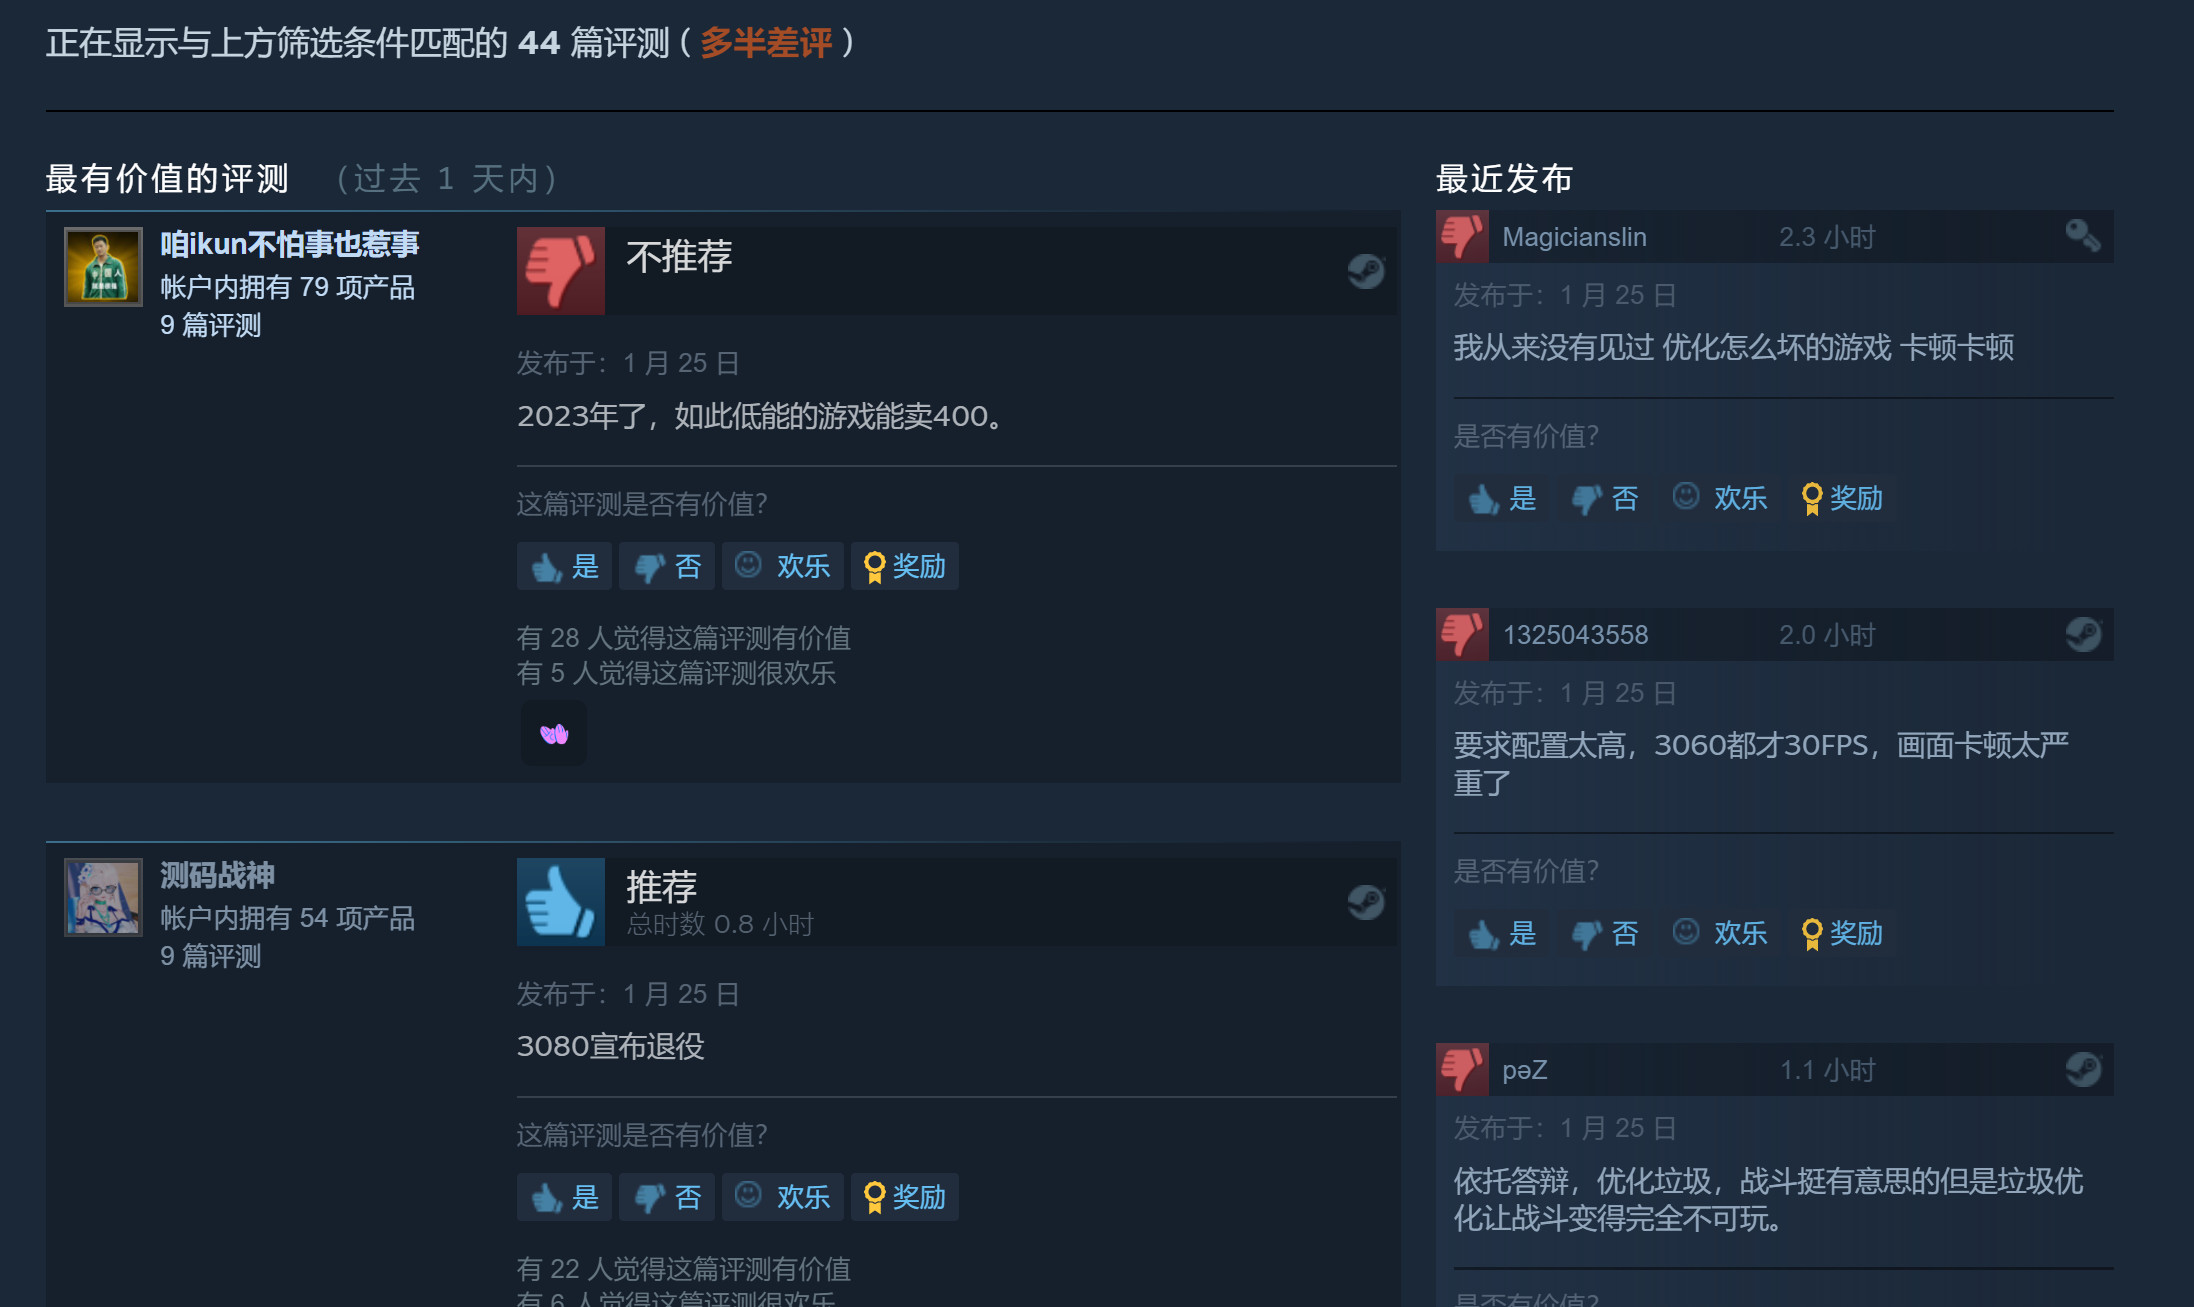 《魔咒之地》Steam现已解锁 中文评价“多半差评”